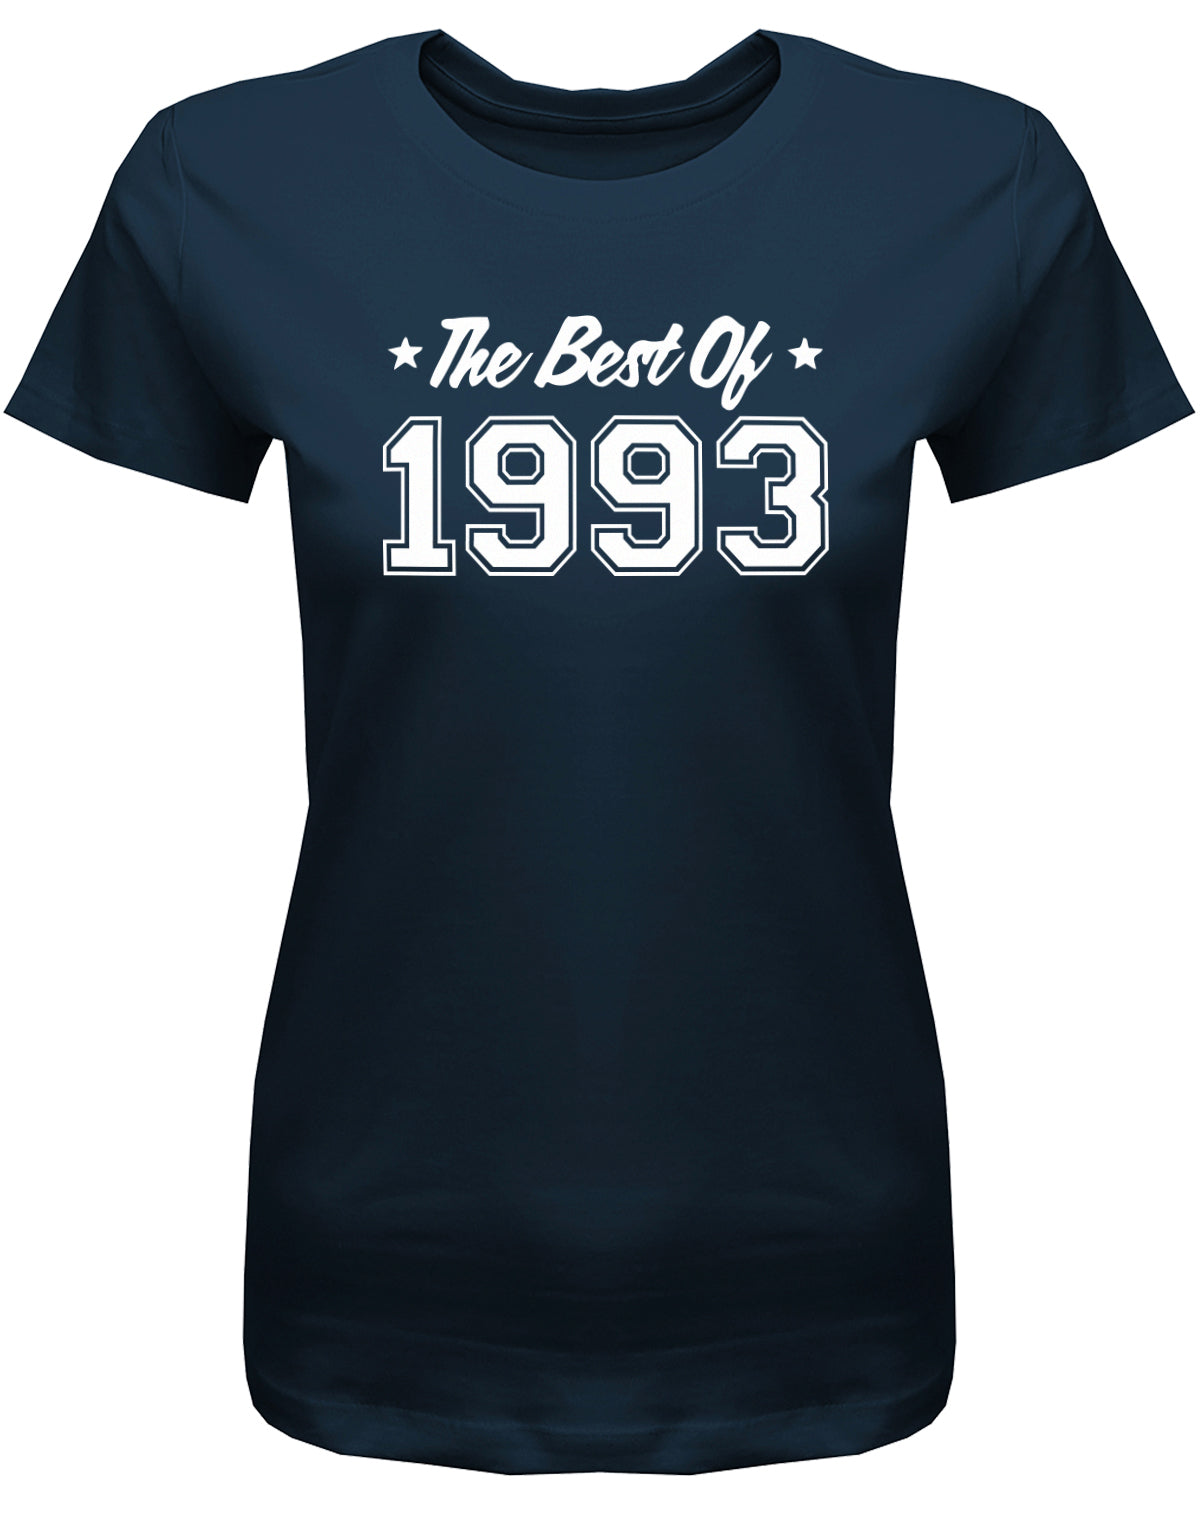 Lustiges T-Shirt zum 30. Geburtstag für die Frau Bedruckt mit: The best of 1993 ✓ Geschenk zum 30 geburtstag Frau ✓ 1993 geburtstag Frau ✓ 30 Geburtstag tshirt ✓ shirt geburtstag 30 Navy